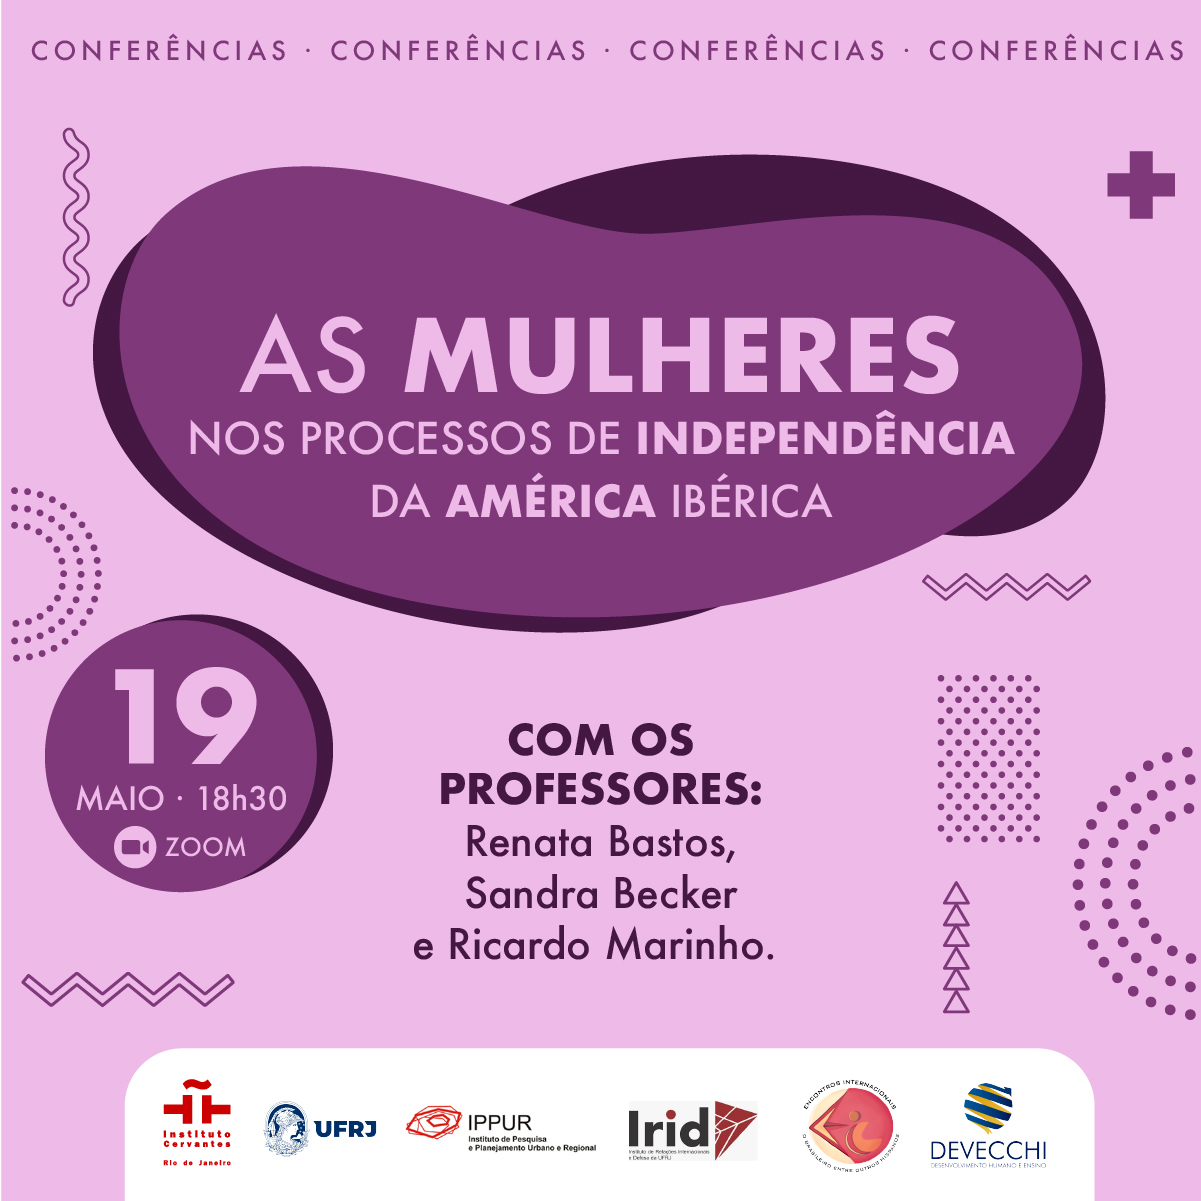 As mulheres nos processos de independência da América Ibérica